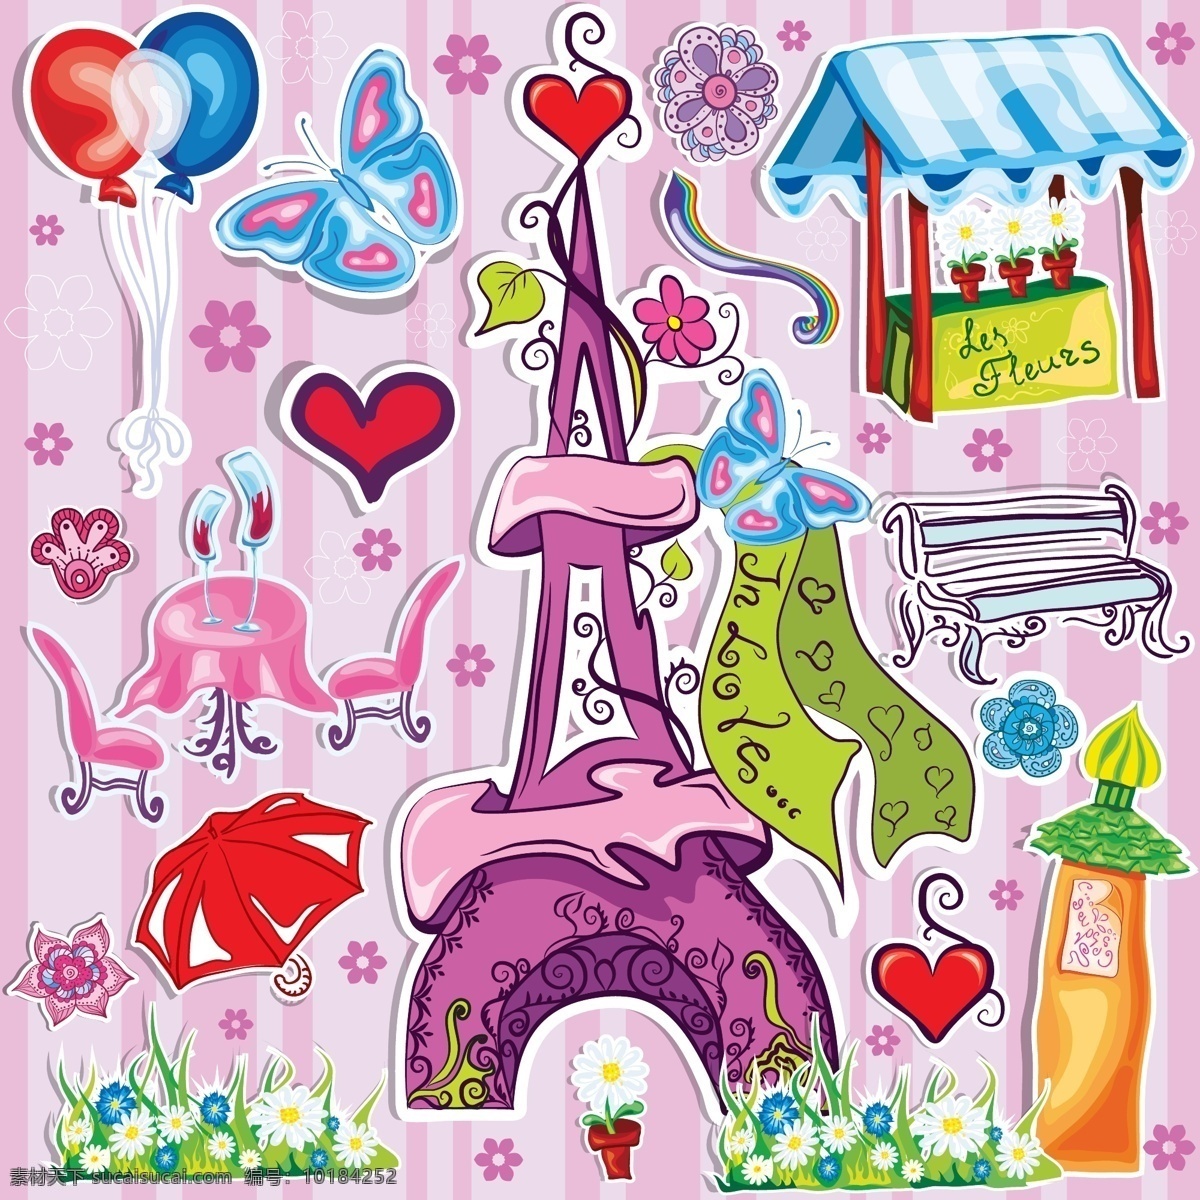 充满 爱心 巴黎 铁塔 气球 雨伞 矢量图 其他矢量图